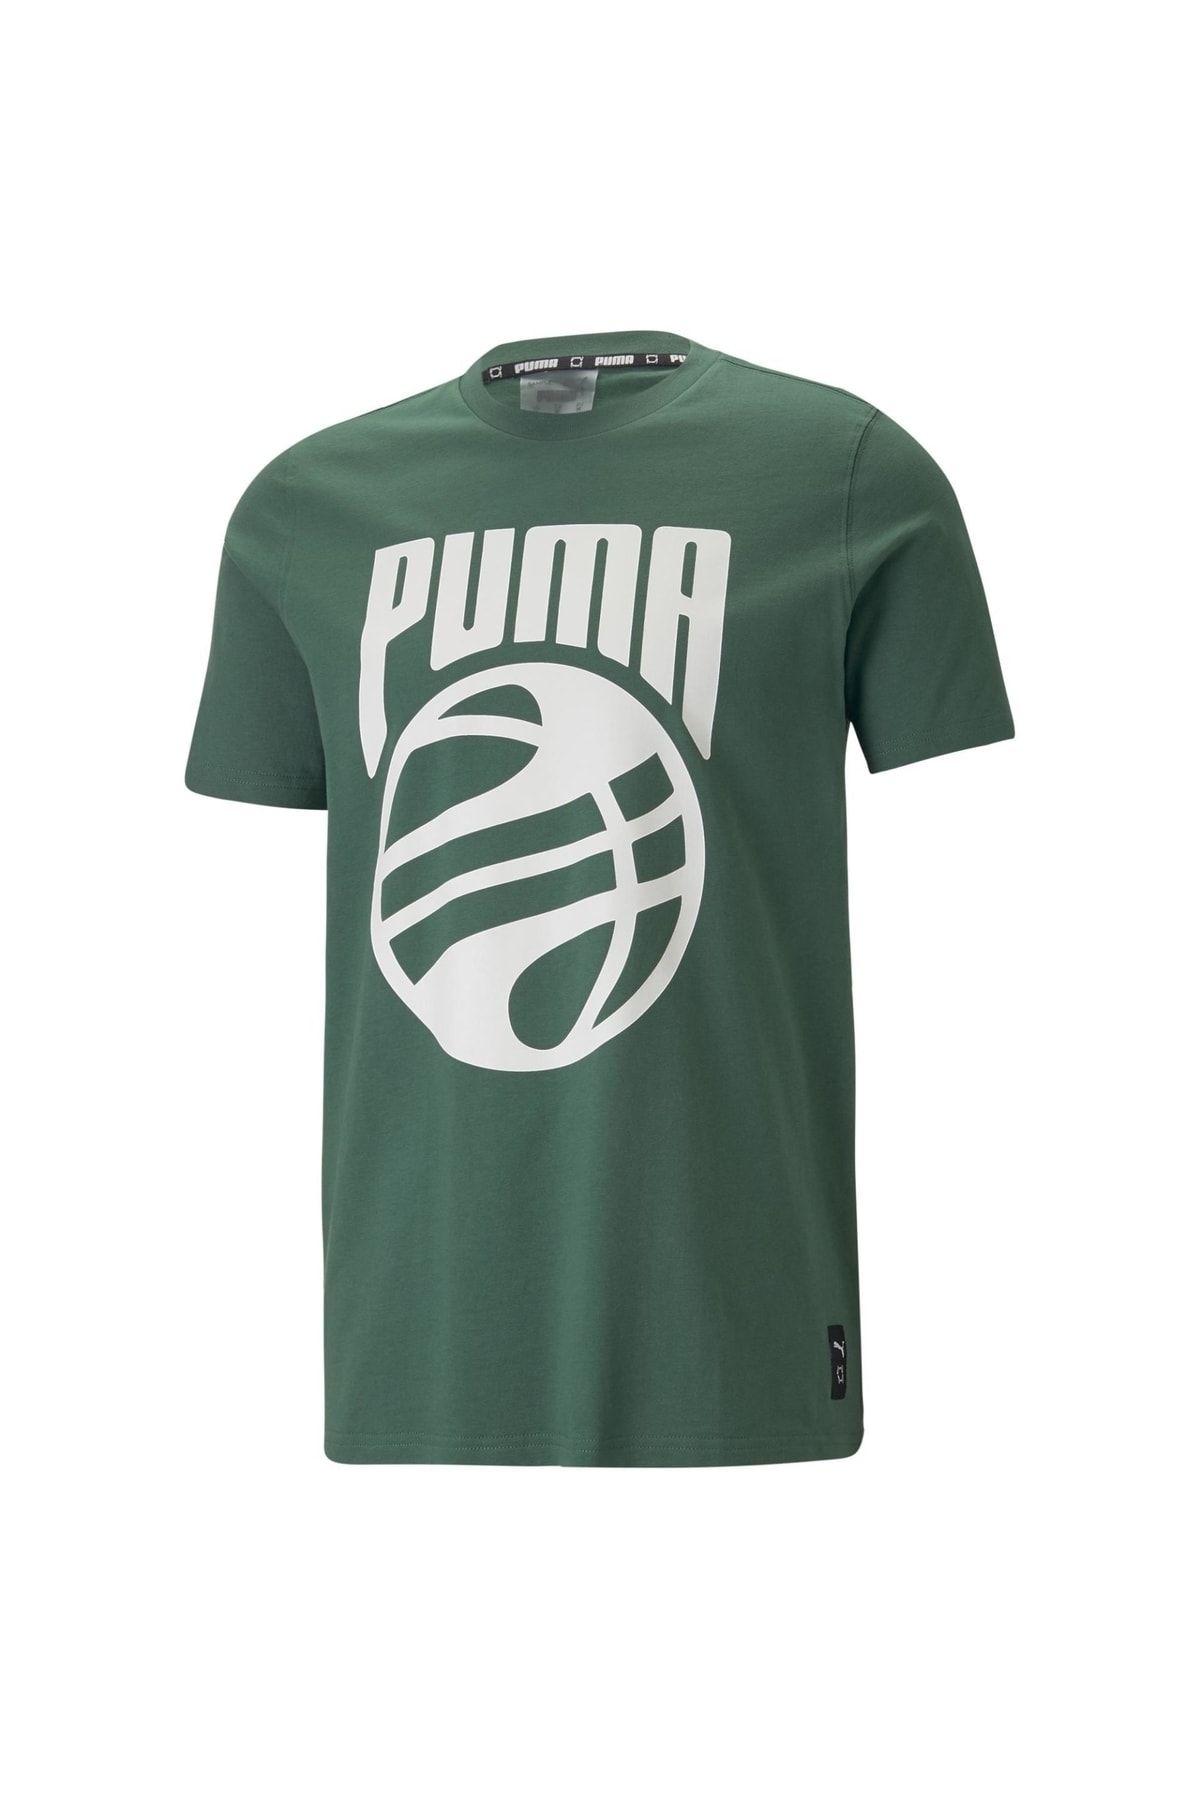 Puma Posterize Erkek Baskılı Tişört Yeşil 53859805